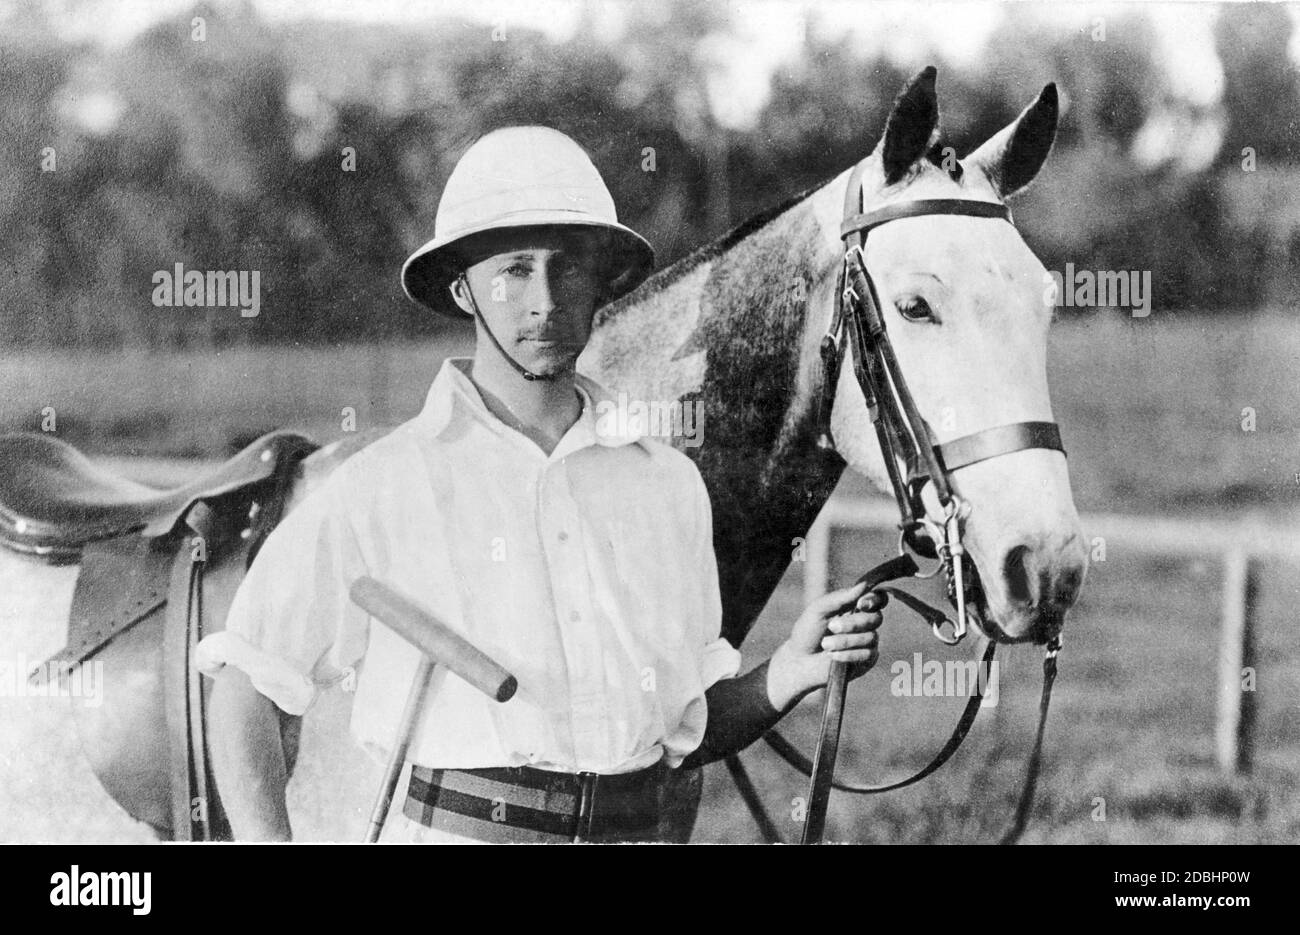 Prince héritier Wilhelm de Prusse (plus tard Kaiser Wilhelm II) comme joueur de polo. Photo non datée, faite autour de 1880. Banque D'Images